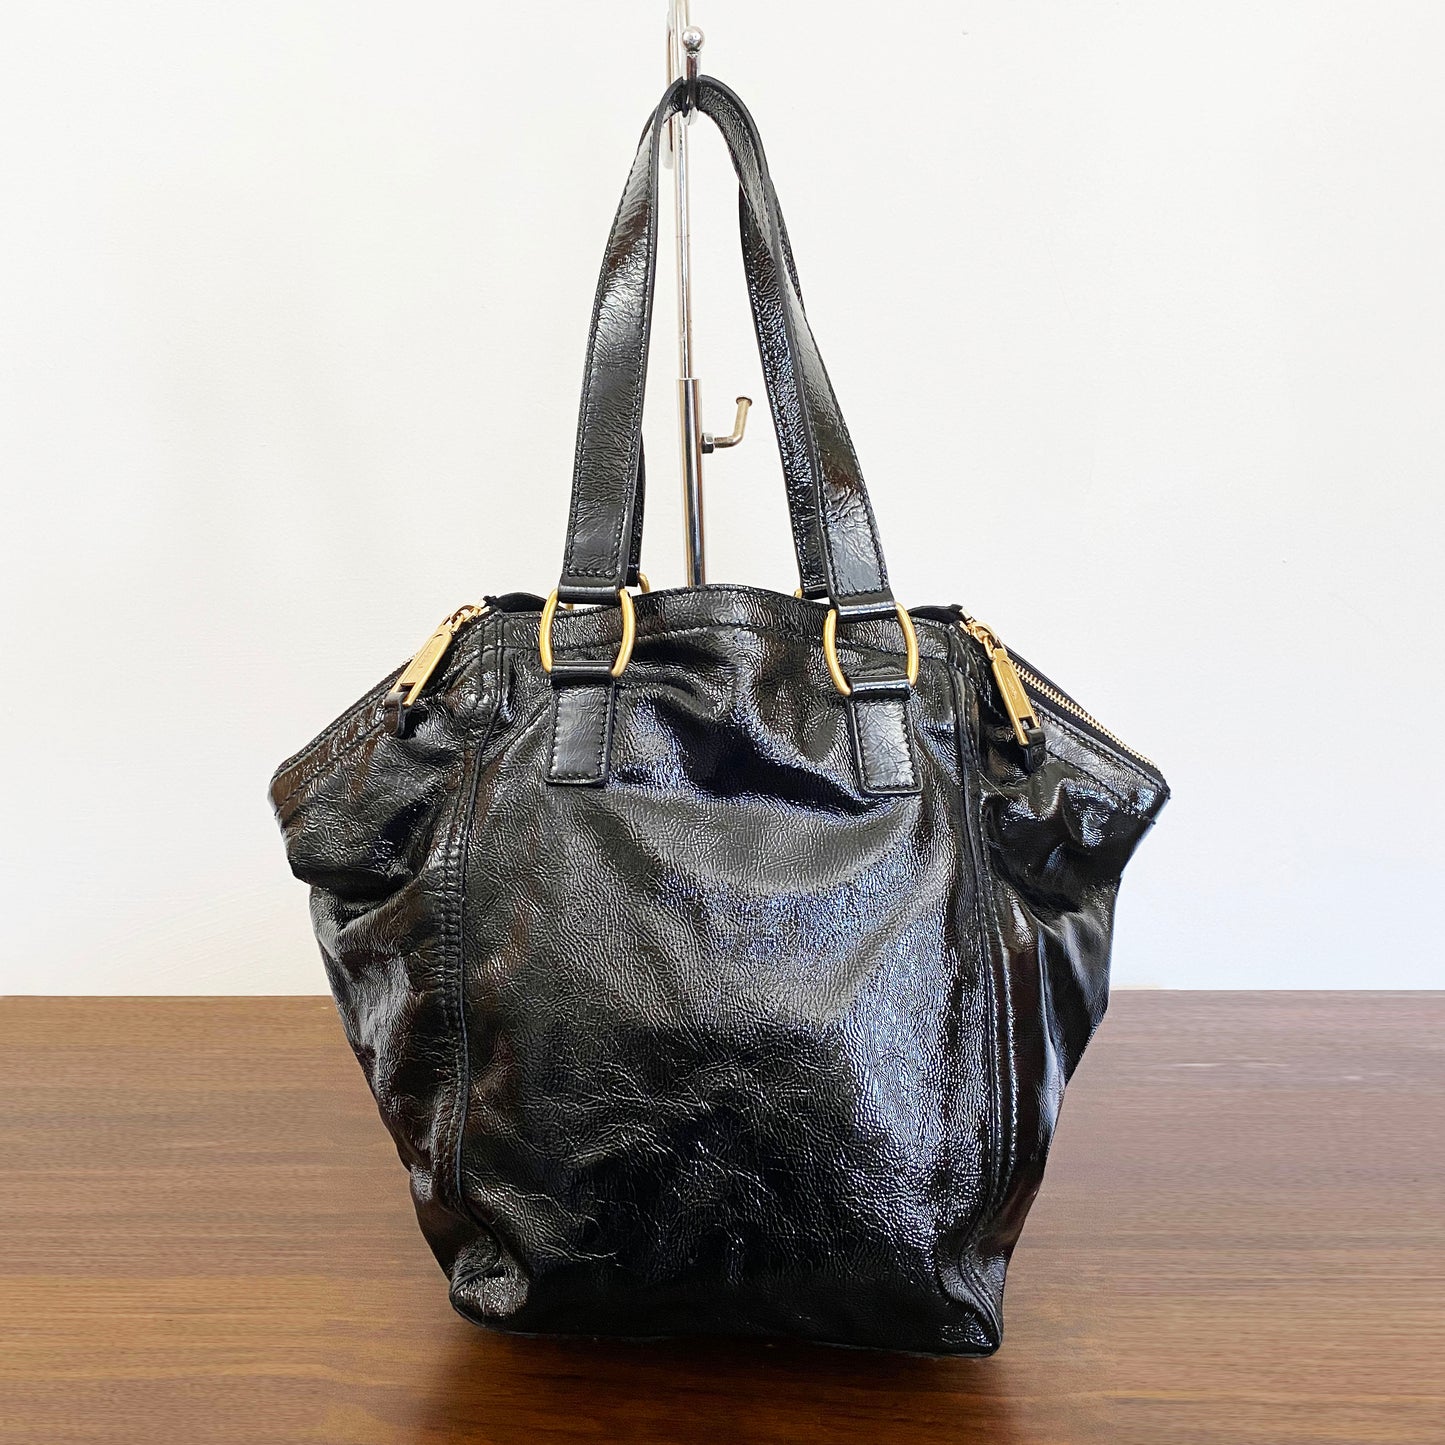 Black Rive Gauche patent-leather tote bag, Saint Laurent